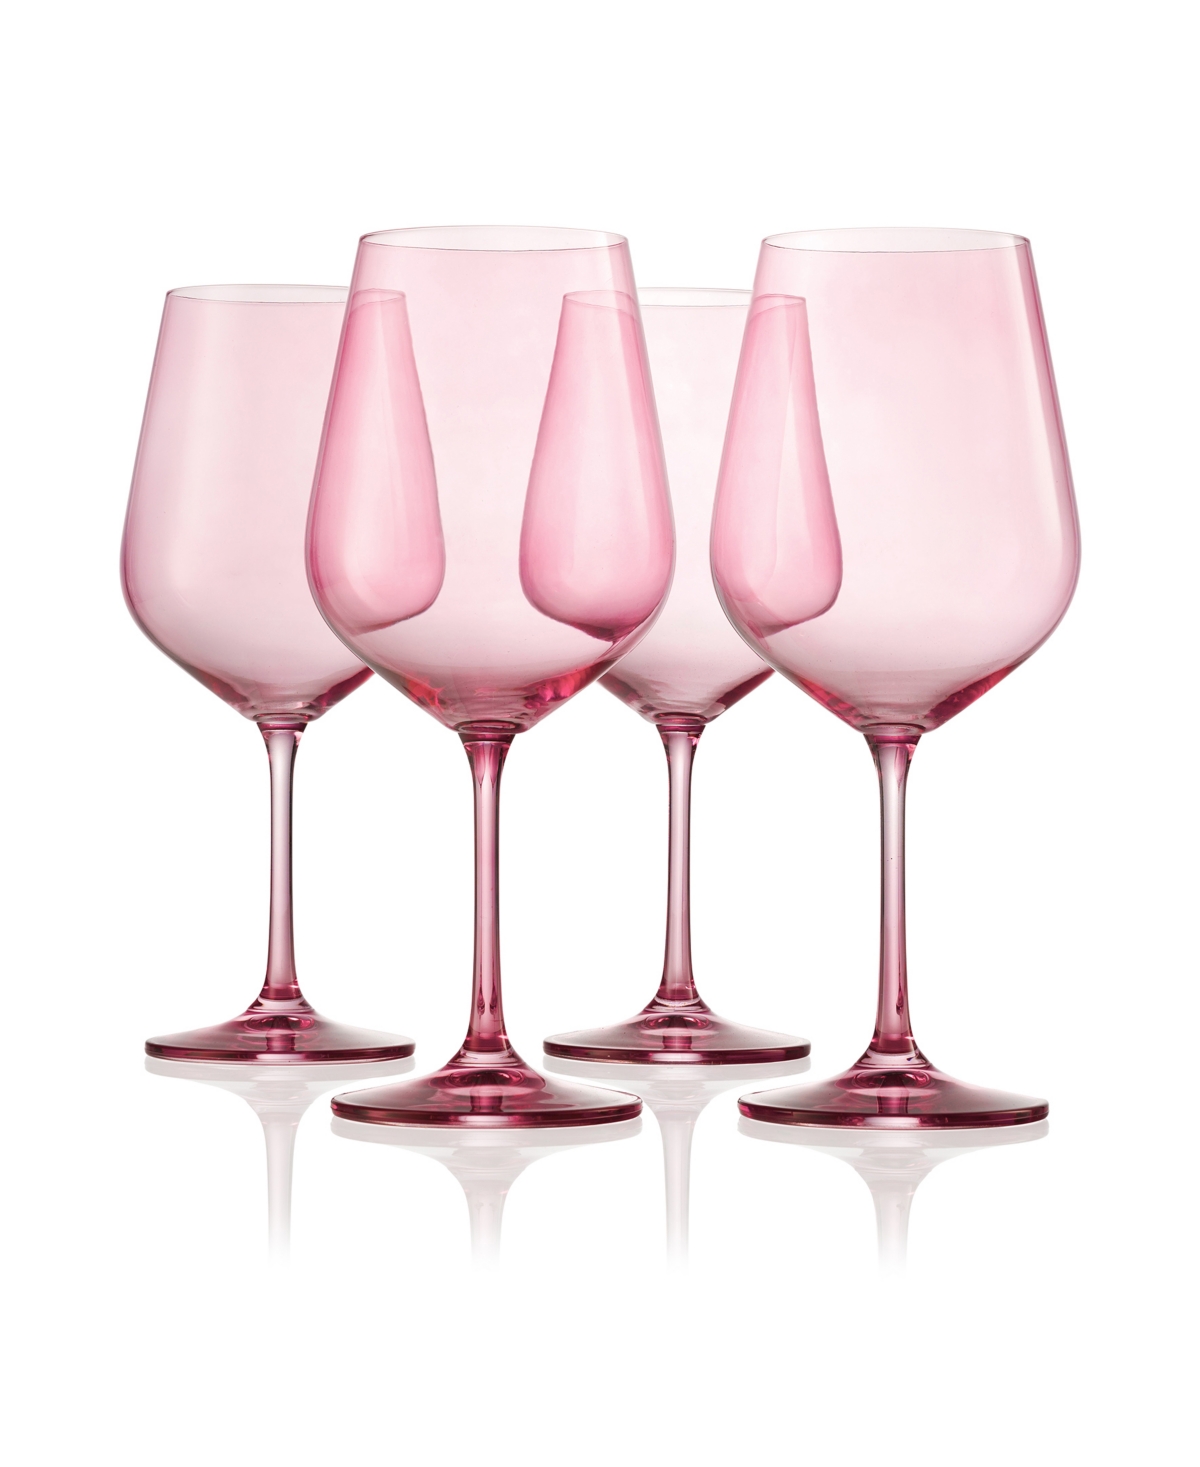 Godinger Sheer Stemmed Wine Glasses, Set Of 4 In Rose